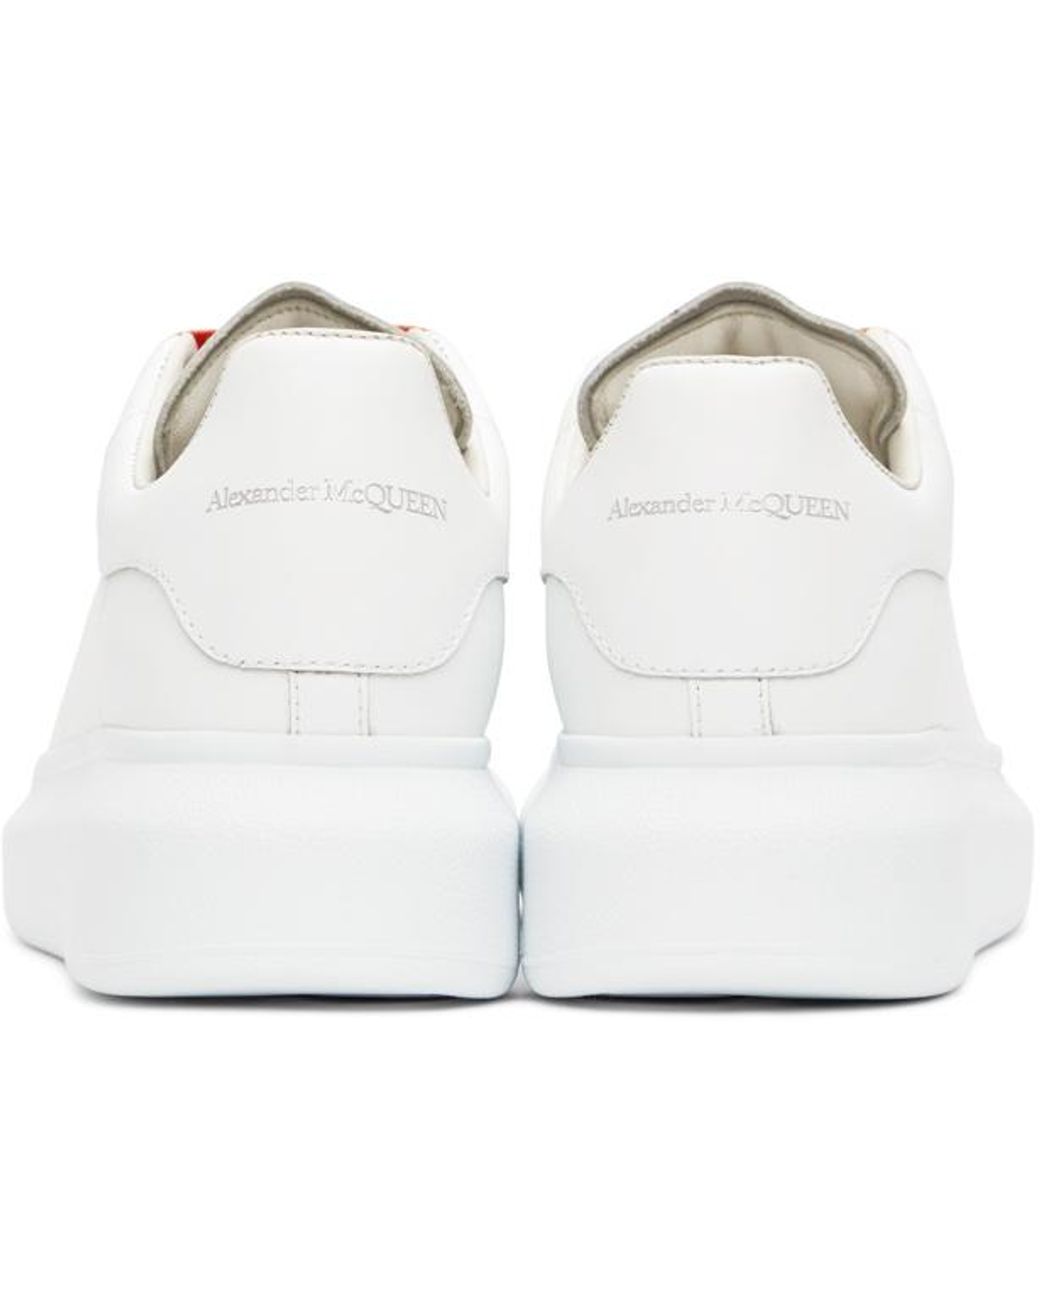 Alexander McQueen Girl's Rainbow Leather Platform Sneakers, Toddler/Kids -  Bergdorf Goodman